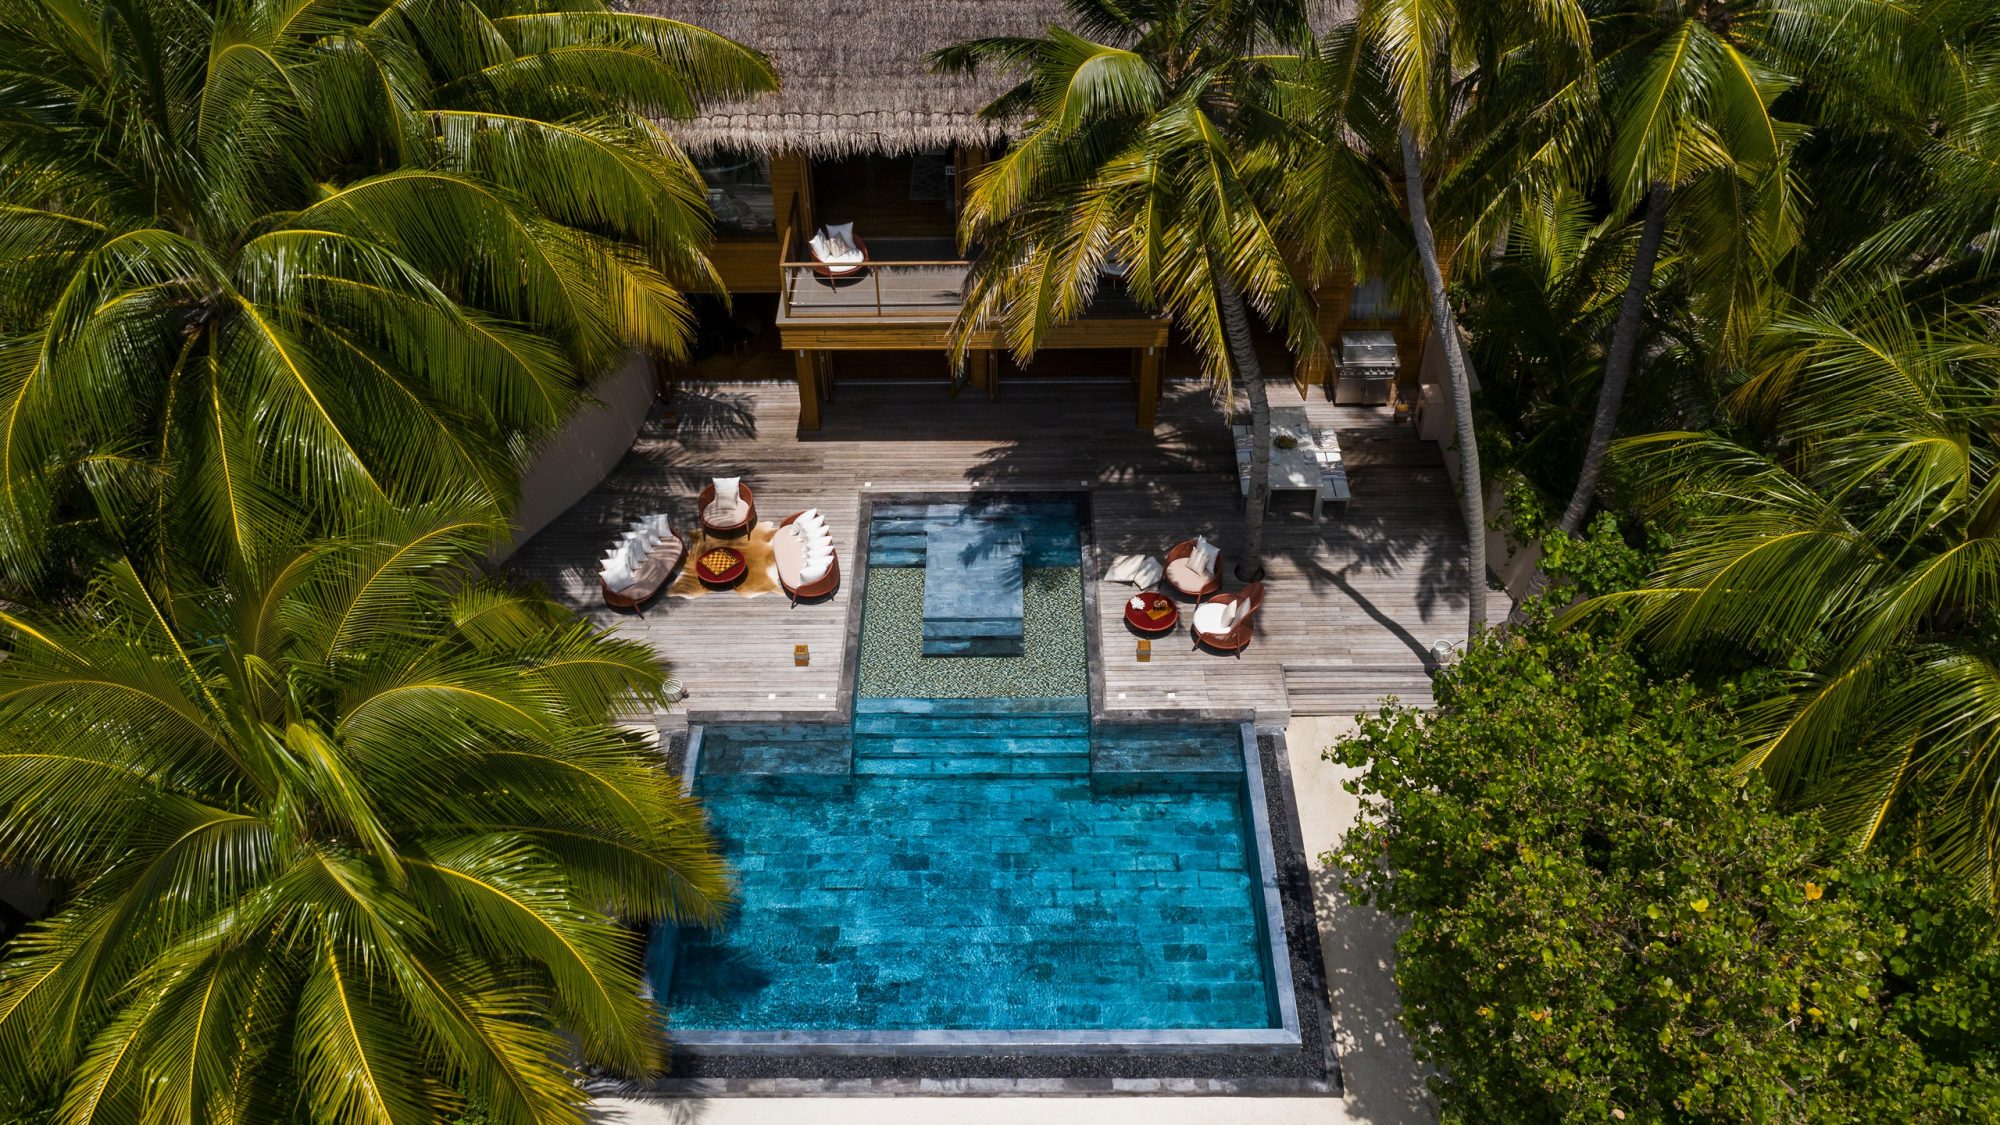 Bask in tropical splendor at the Huvafen Fushi Resort in Maldives